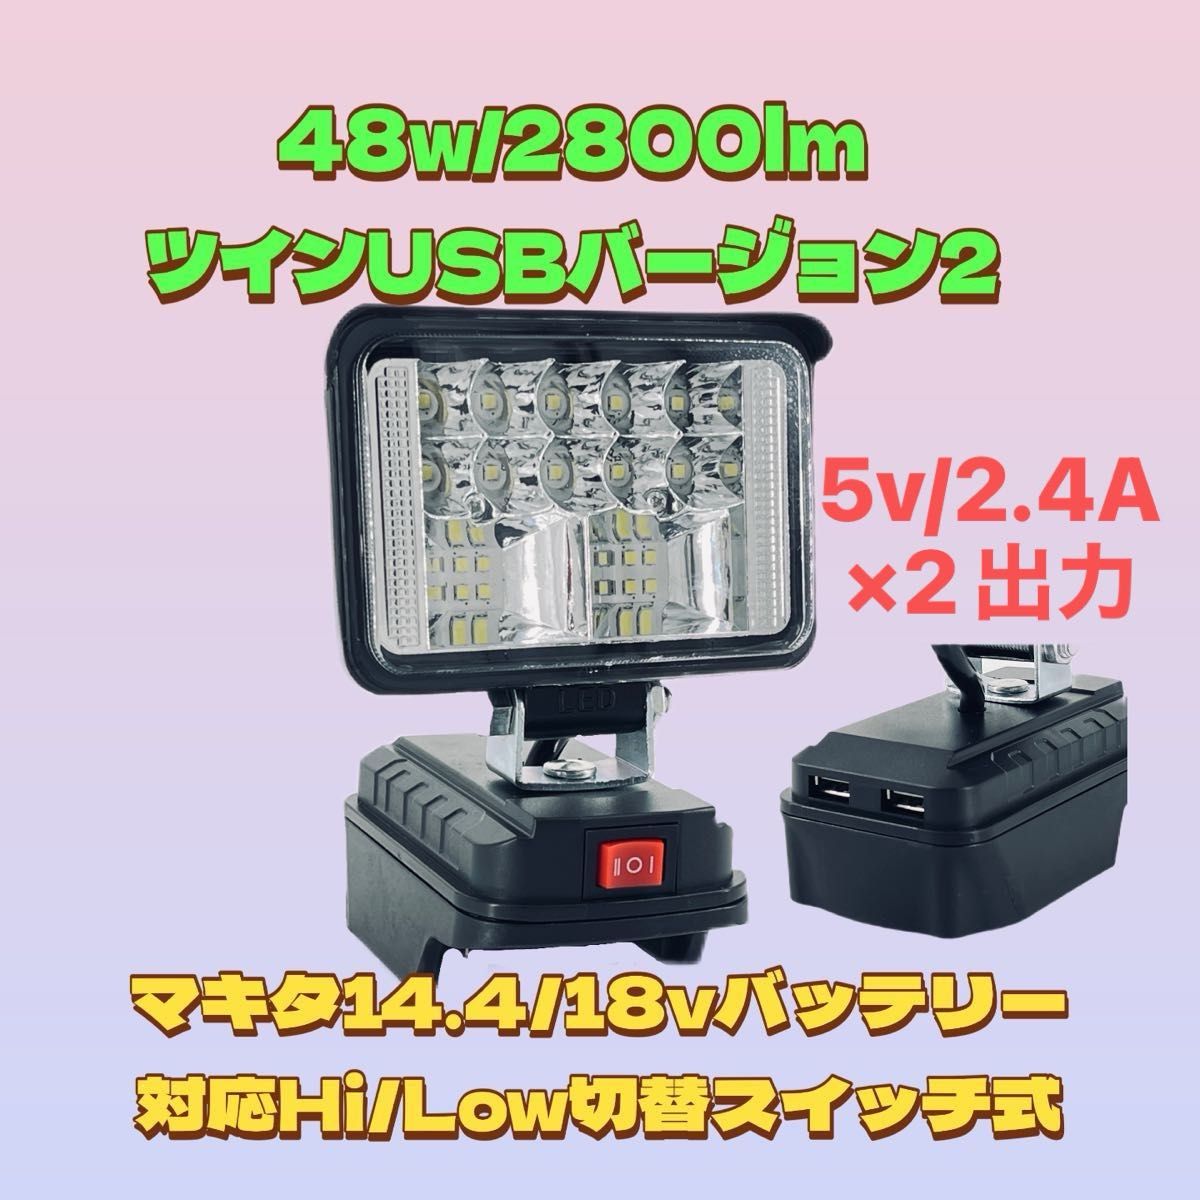 省電力48w /2800lm ツインUSB出力 2.4A LED ワークライト LED投光器 LEDワークライト